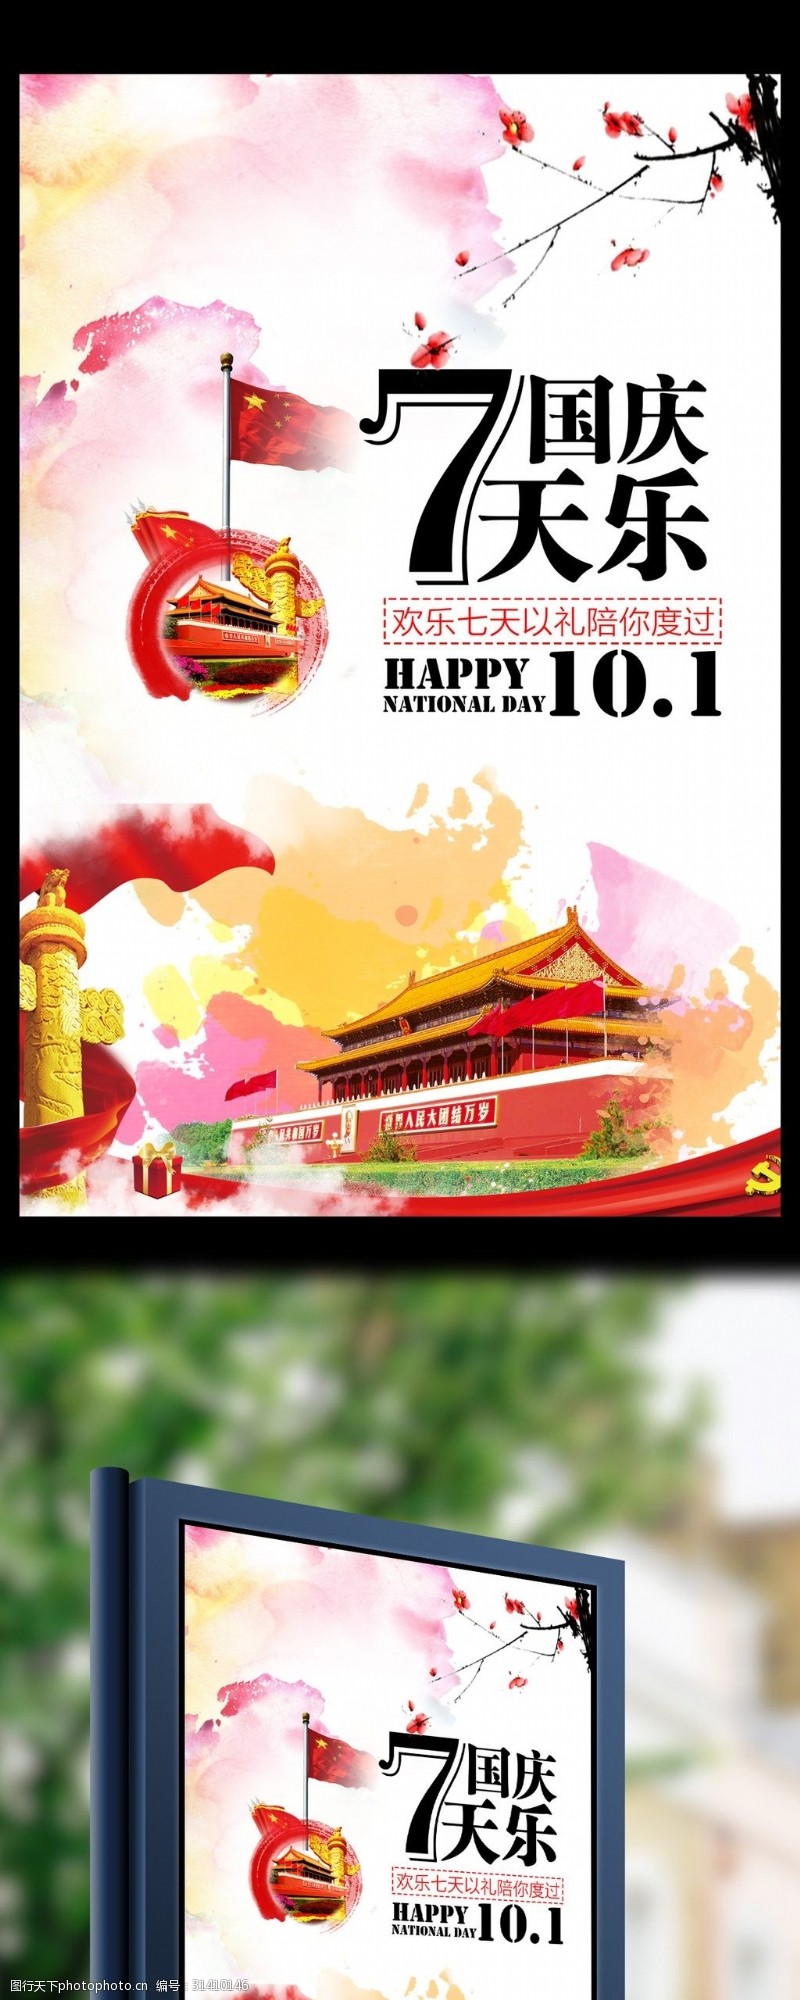 7月促销国庆7天乐国庆节十月一海报展架设计